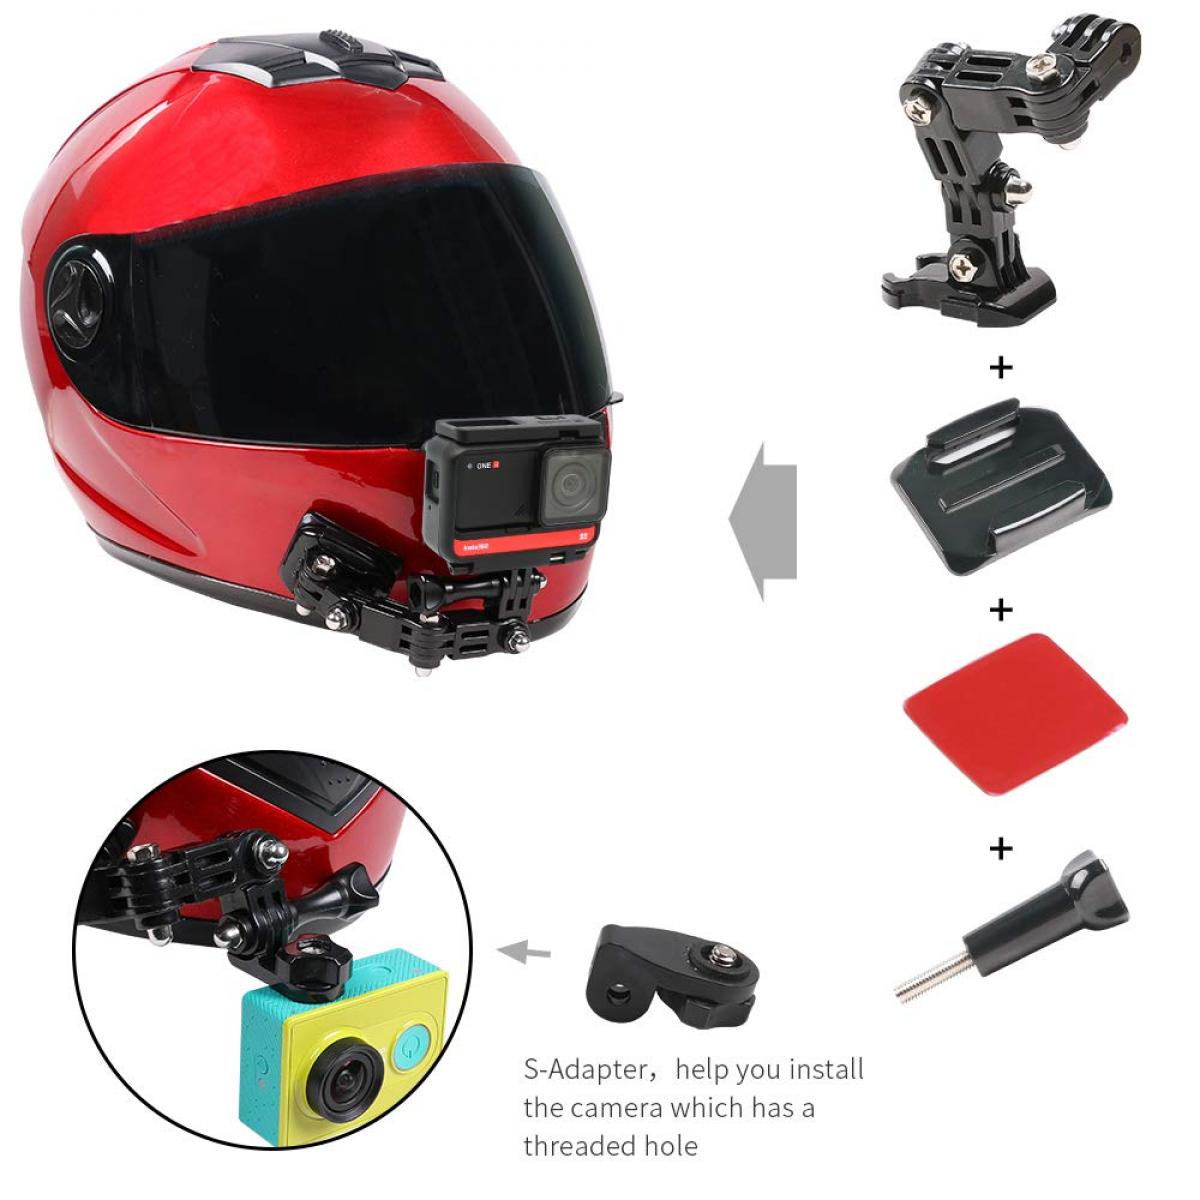 Meilleur Support casque caméra moto 2022 - Le Pratique du Motard